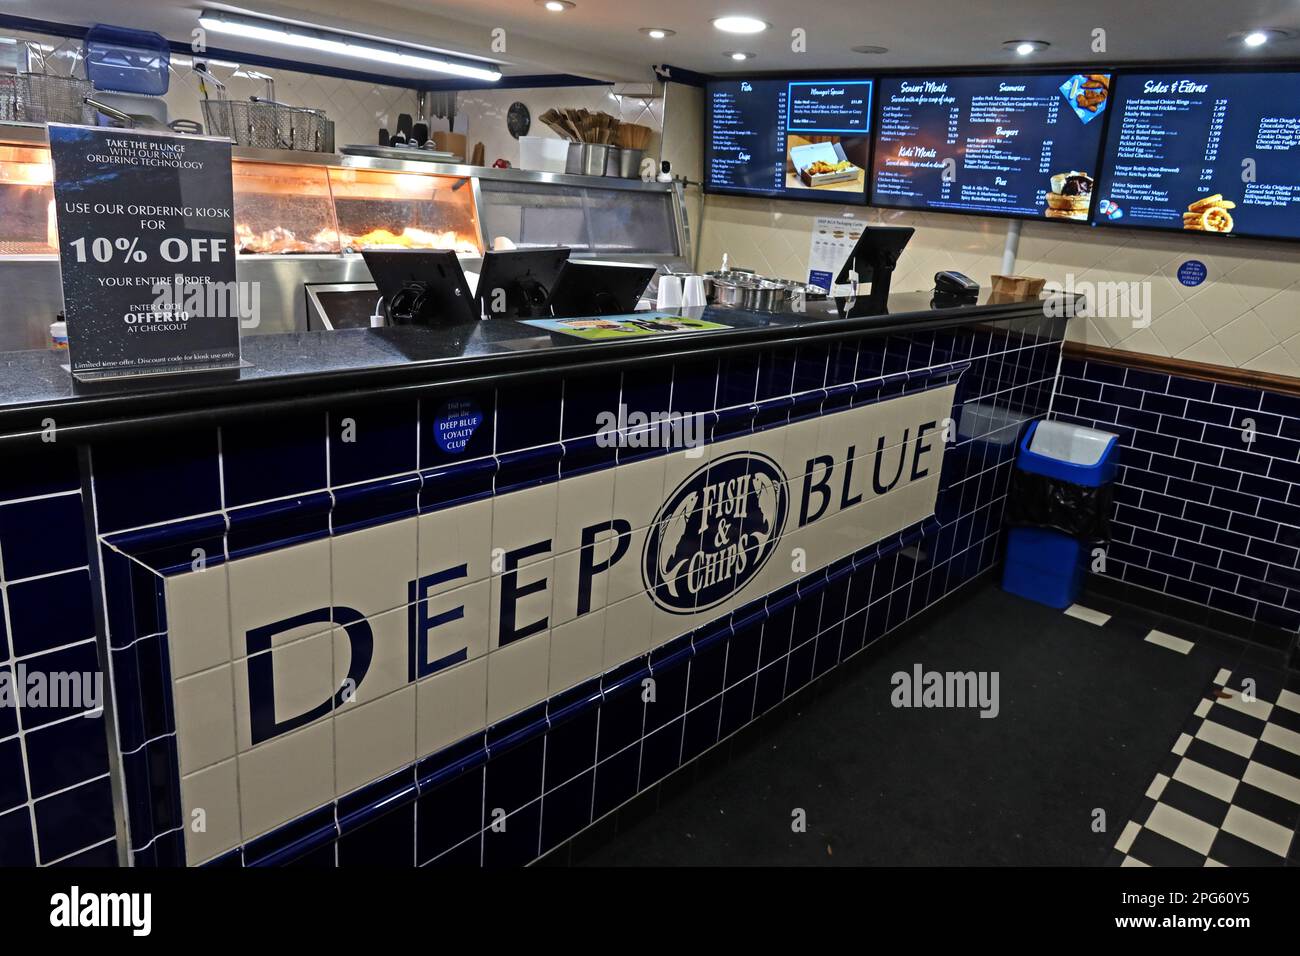 Technologie de commande Deep Blue Chippy, 10 % de réduction, Fish bar, 7-8, Bridge St, Godalming, Waverley, Surrey, Angleterre, Royaume-Uni, GU7 1HY Banque D'Images